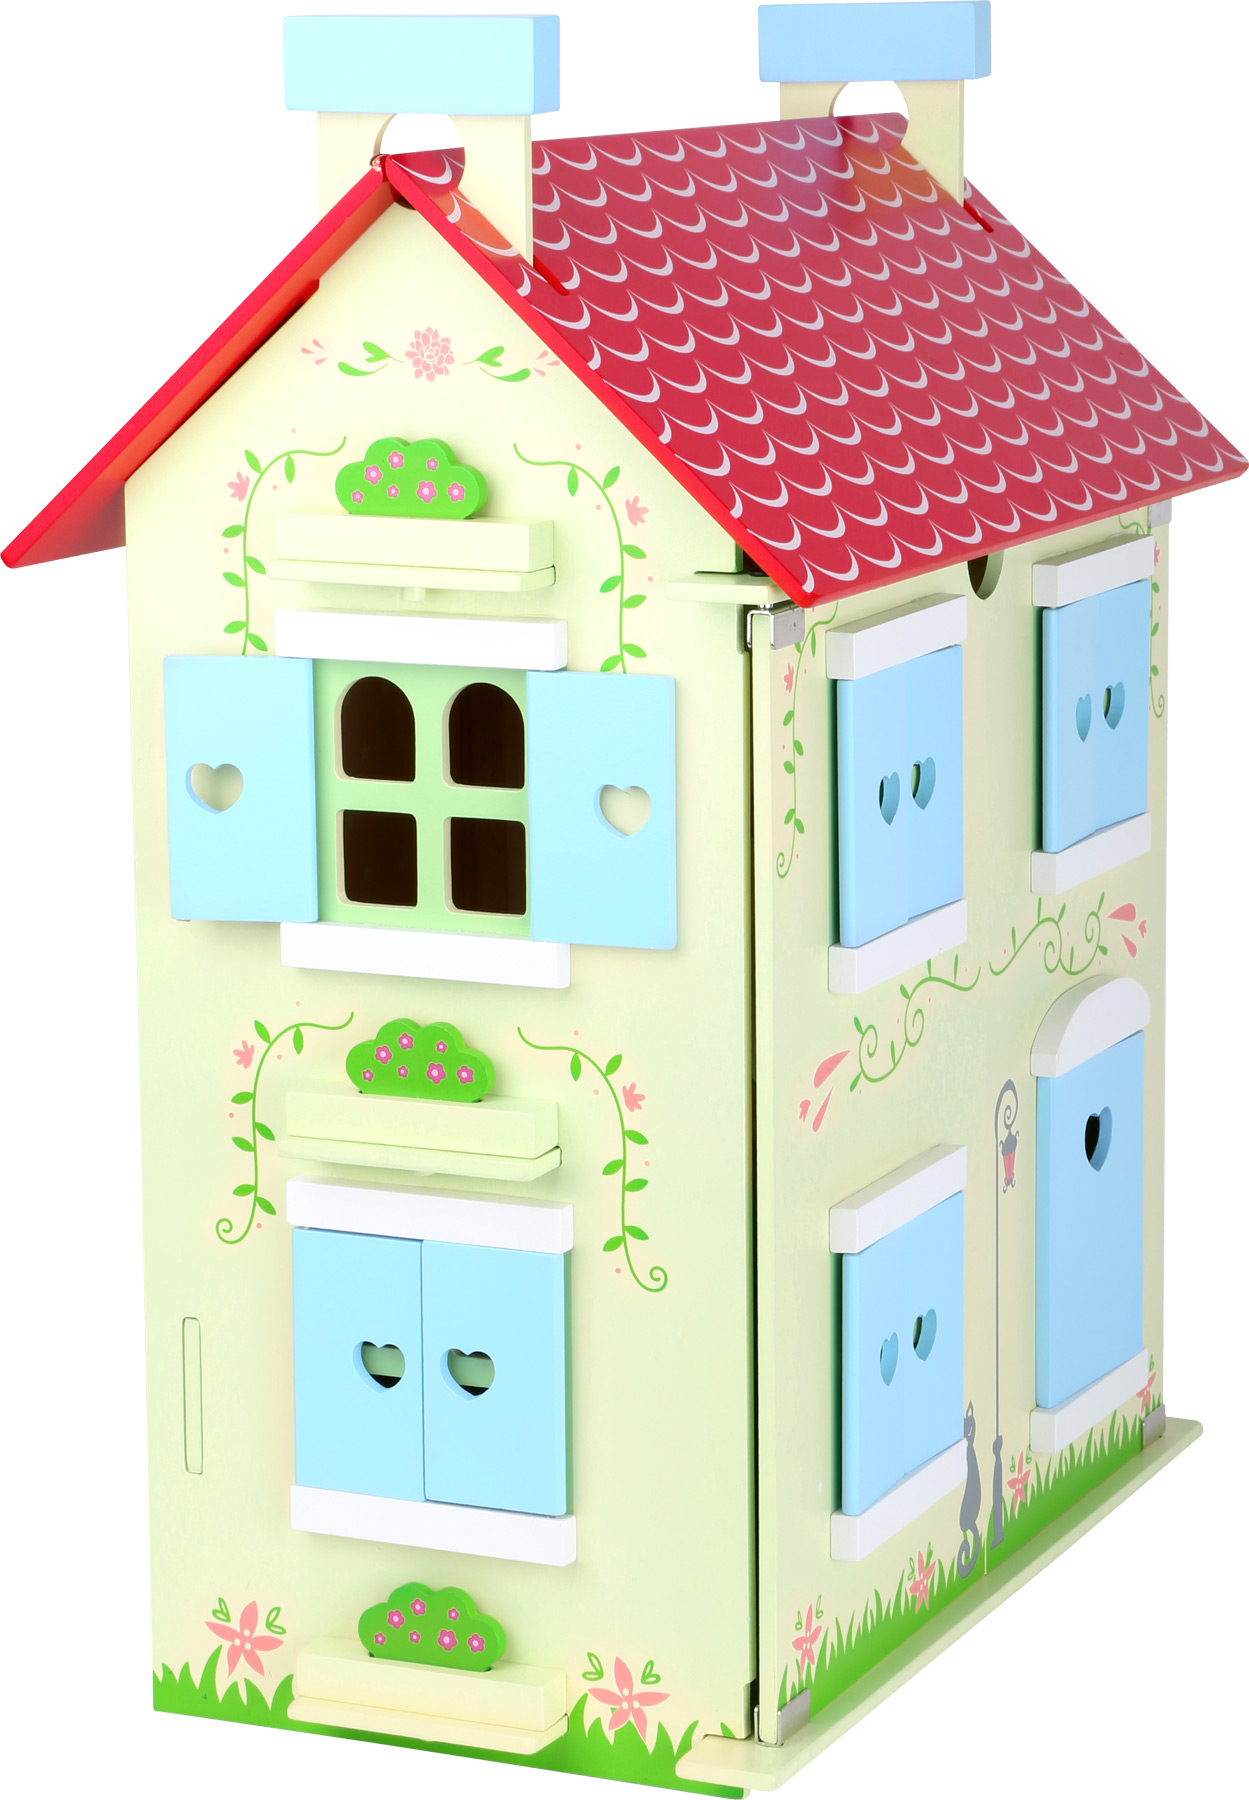 Small Foot Dřevěný domeček pro panenky s odjímatelnou střechou